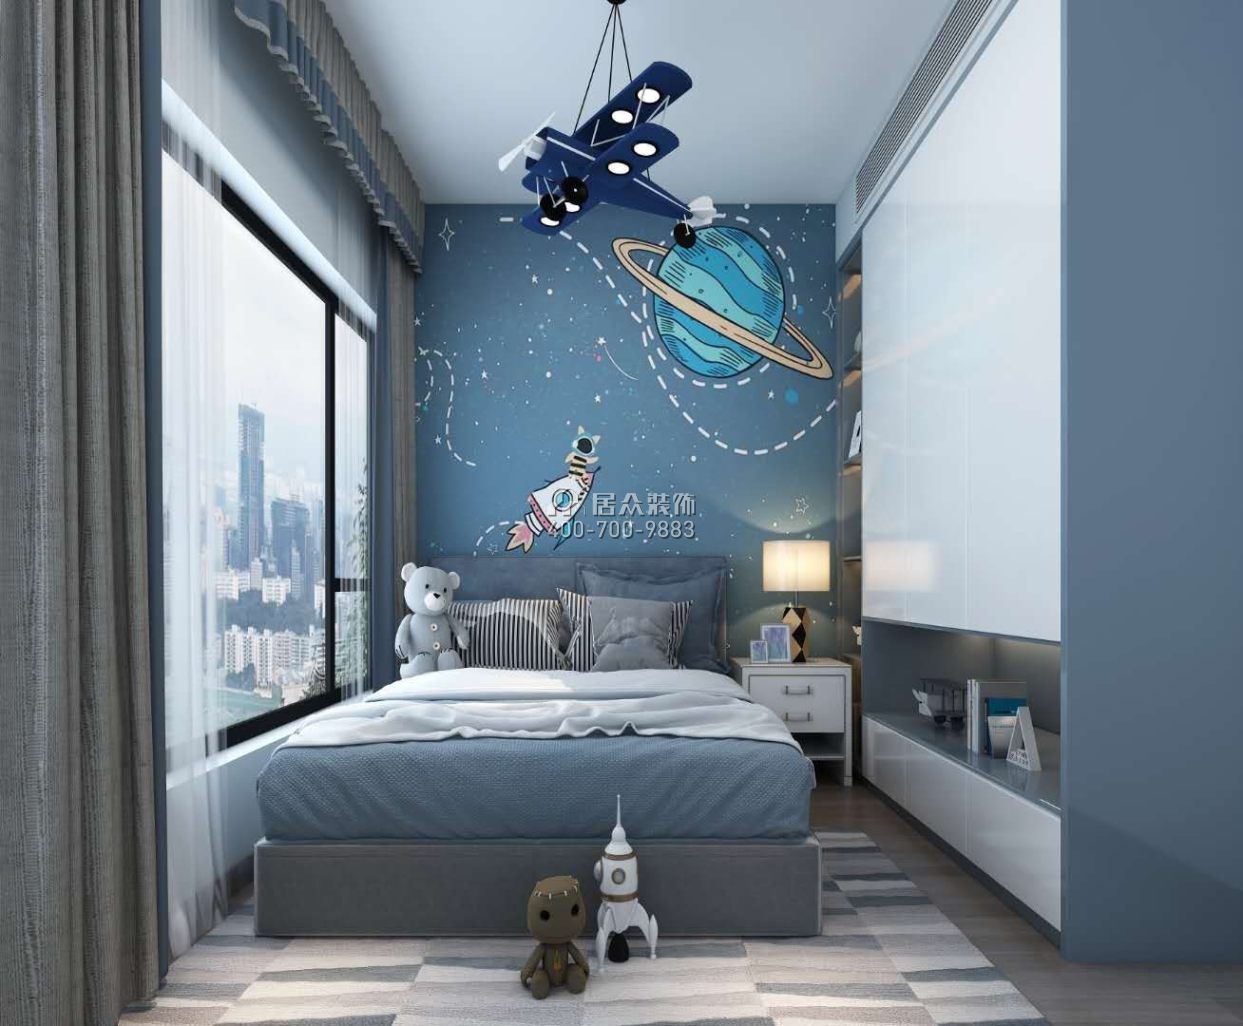 東關樂尚林居108平方米現代簡約風格平層戶型臥室裝修效果圖